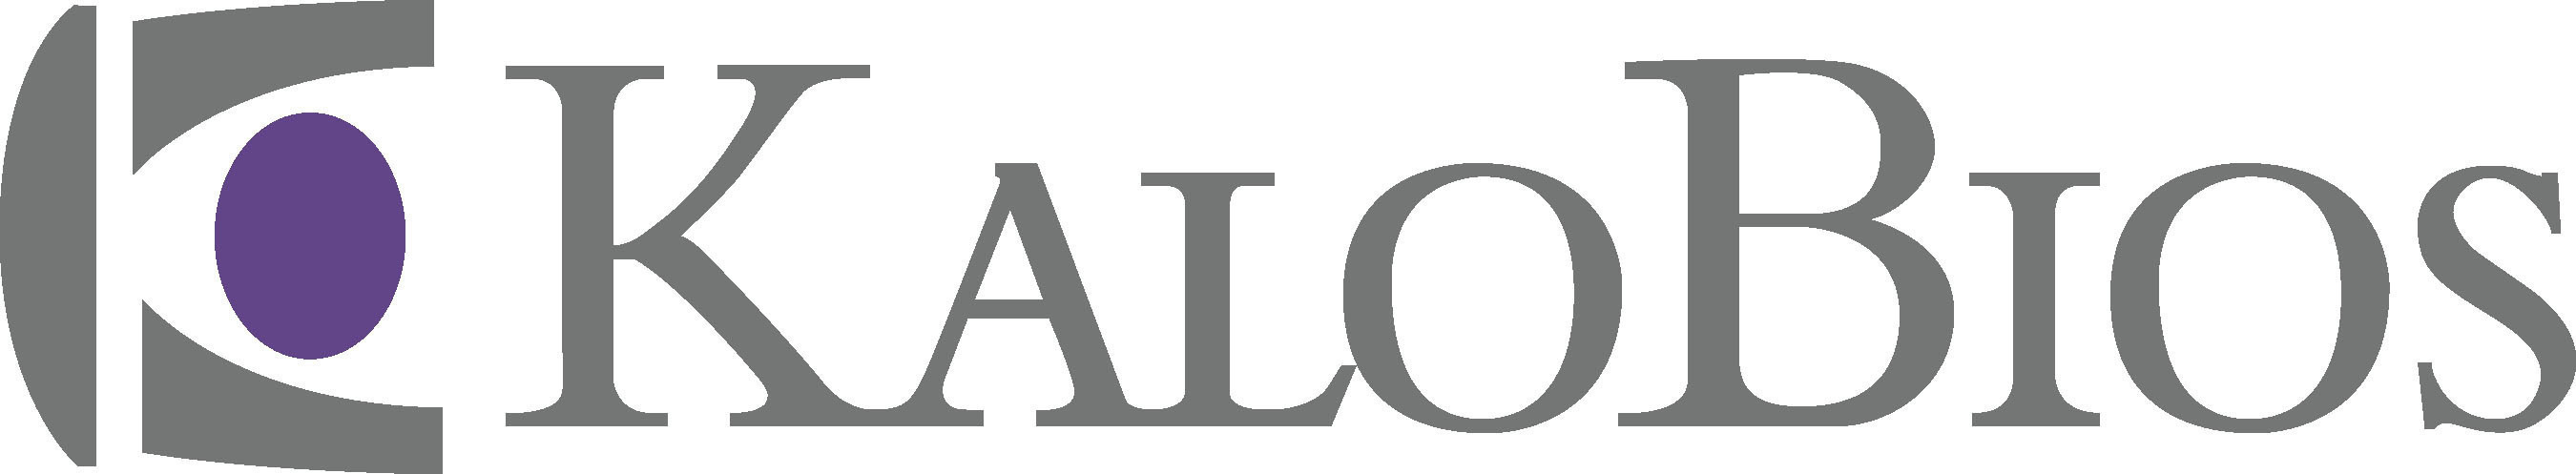 KaloBios logo.